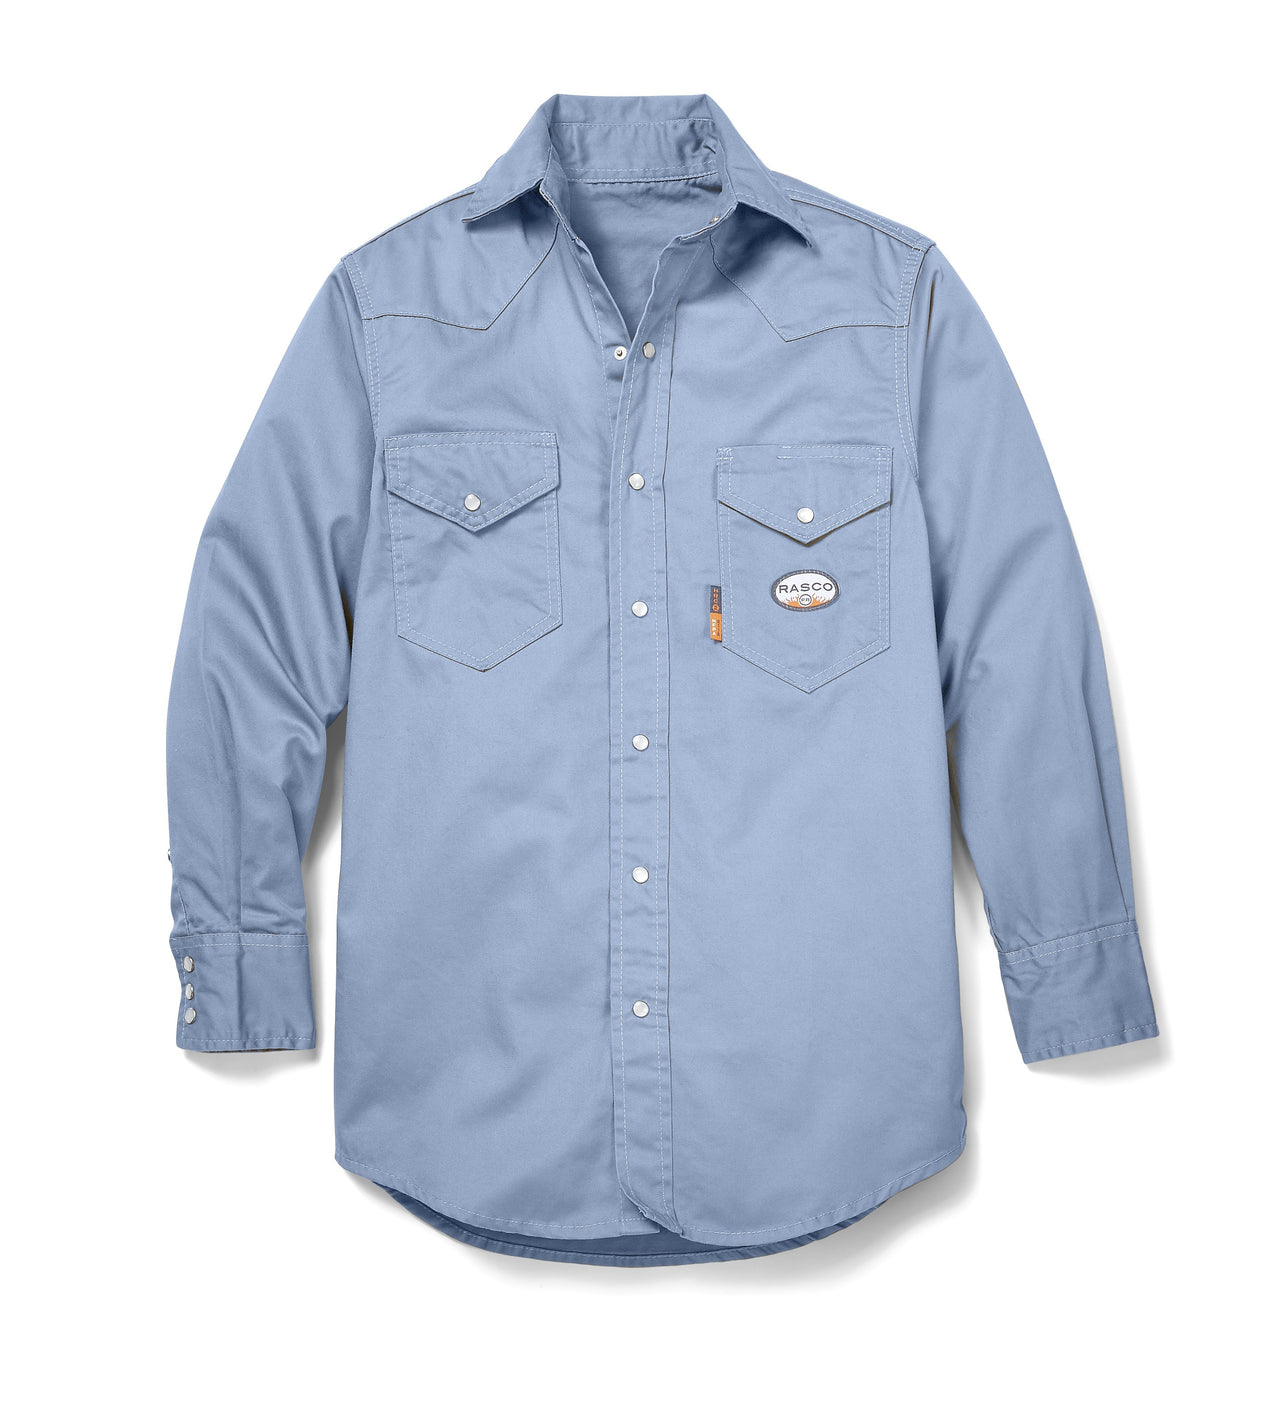 Work Blue Long Sleeve FR Uniform Shirt